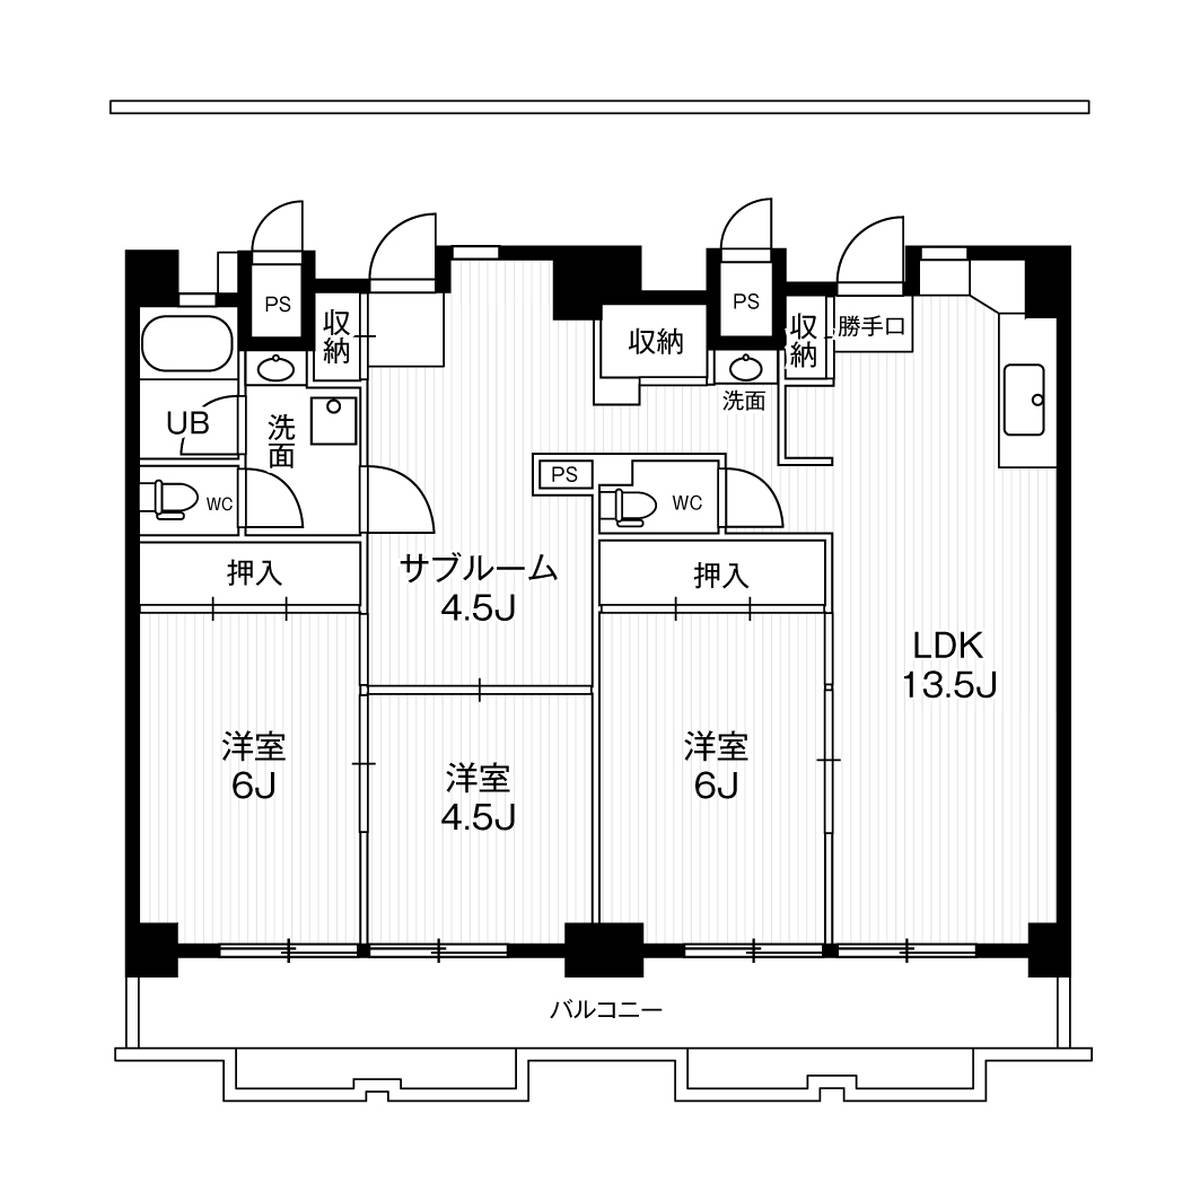 3LDK floorplan of Village House Ichinomiya Tower in Ichinomiya-shi